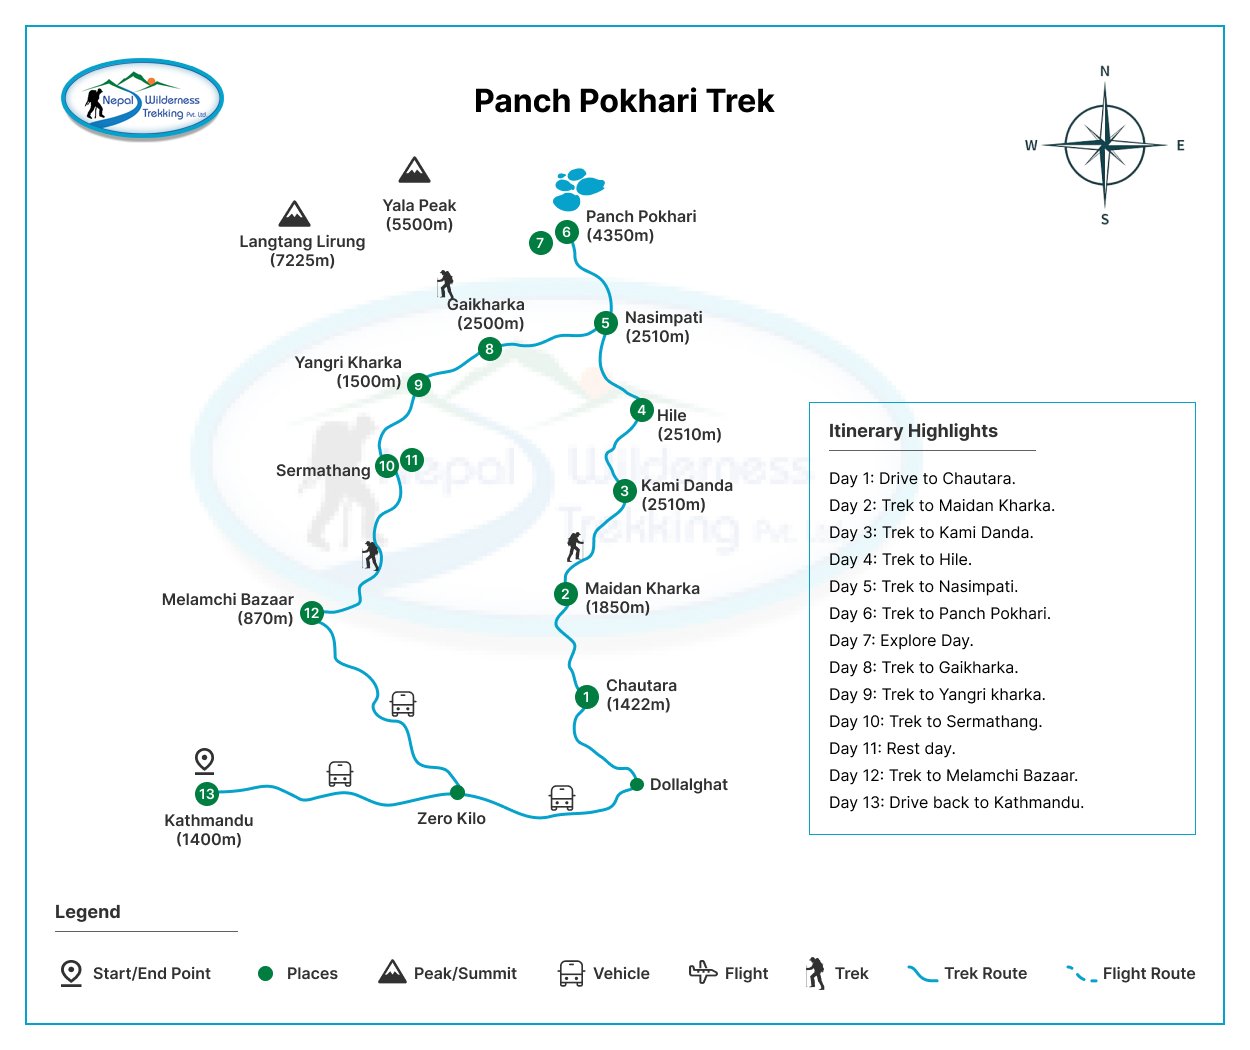 panch pokhari trek cost for nepali